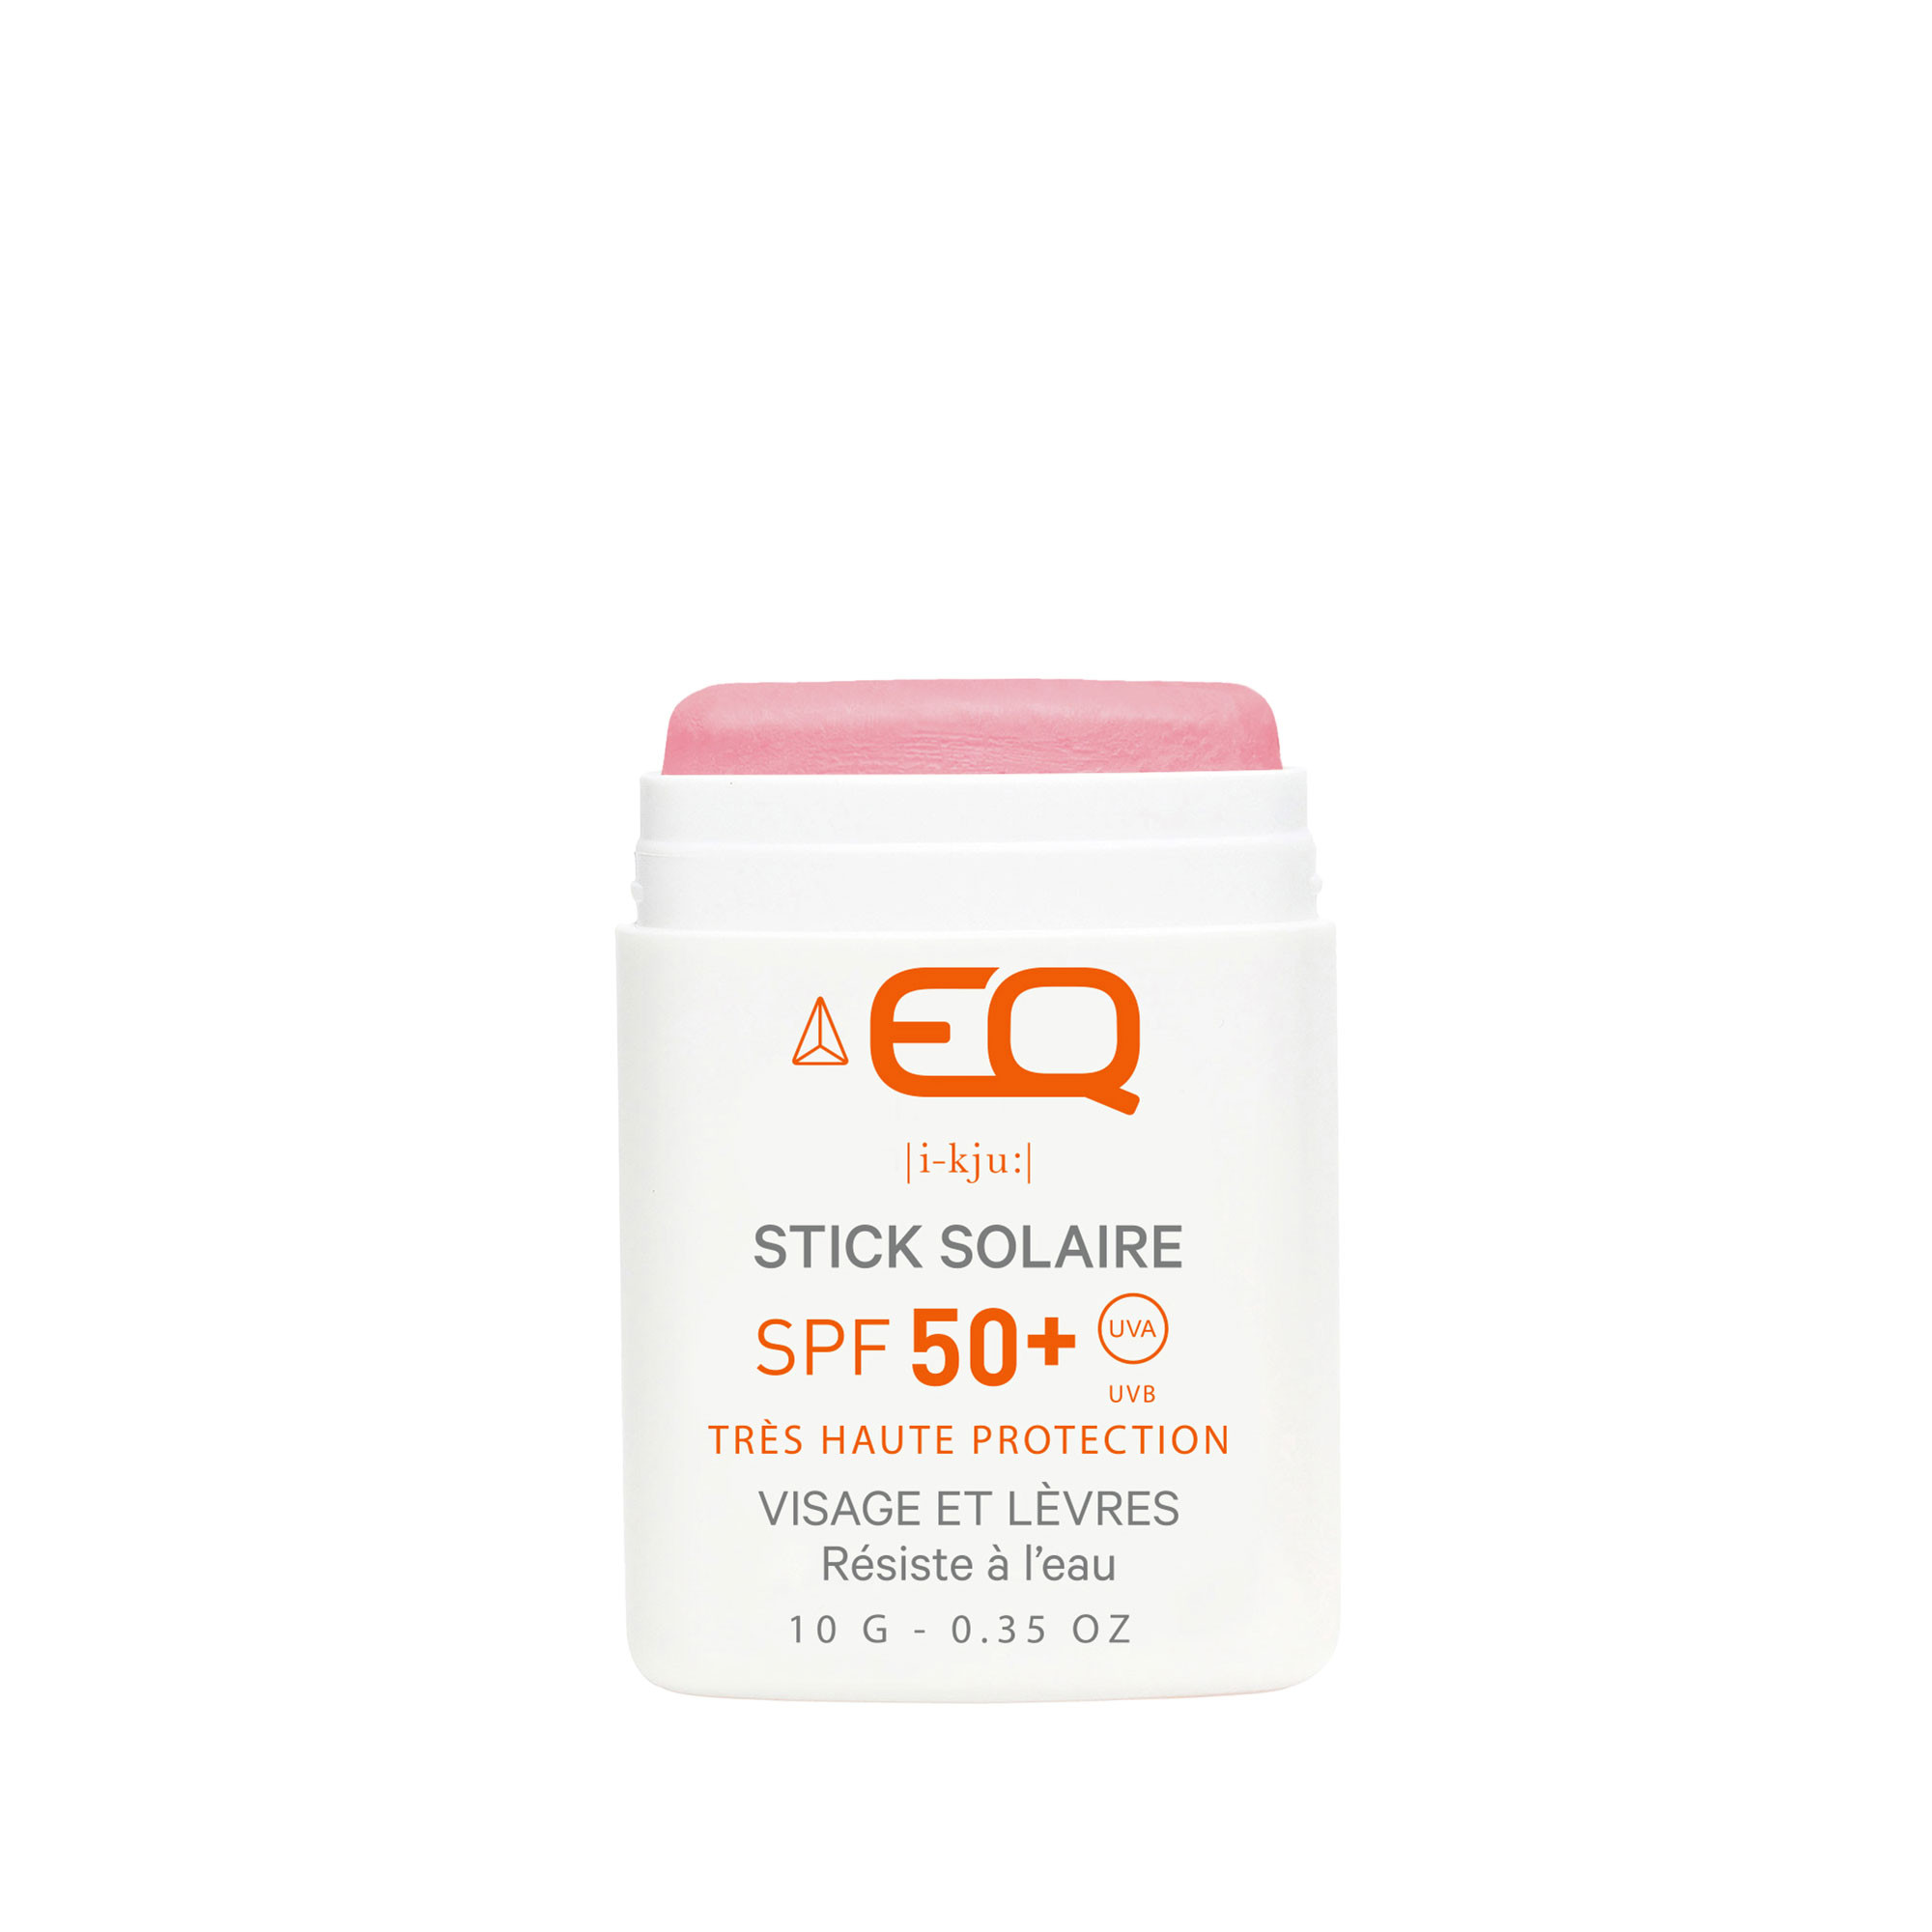 Sunscreen Face Stick SPF 50+ Raspberry Pink EQ – Very high